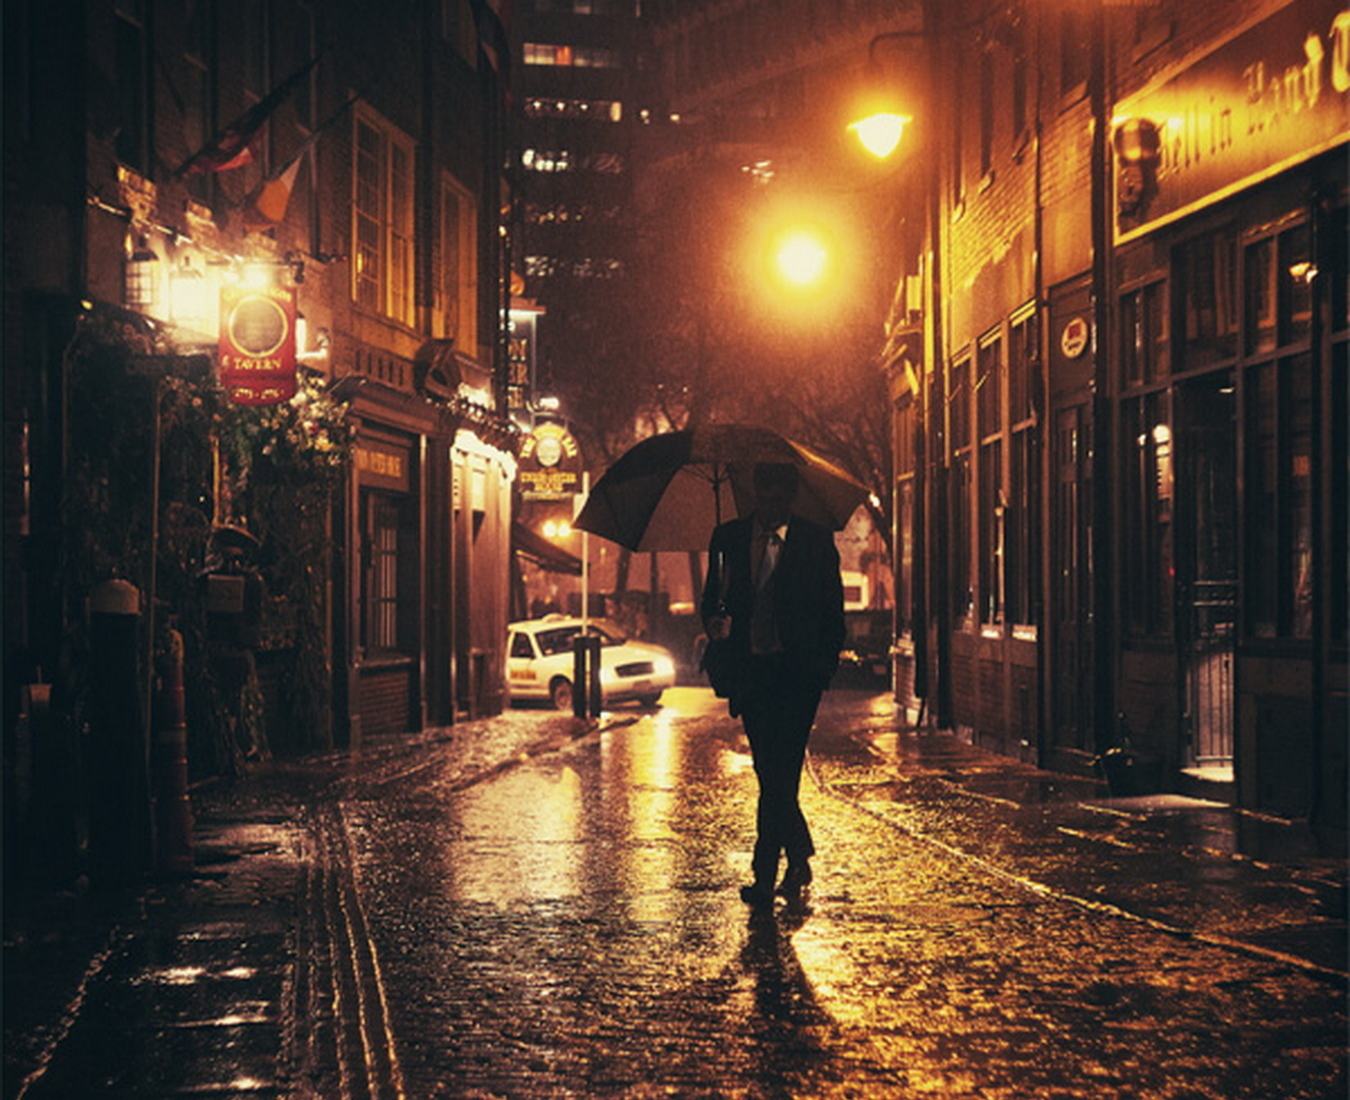 Шел я вечером поздно. Люди на улице вечером. "Дождливый вечер". Парень идет по улице. Человек бредет по улице.